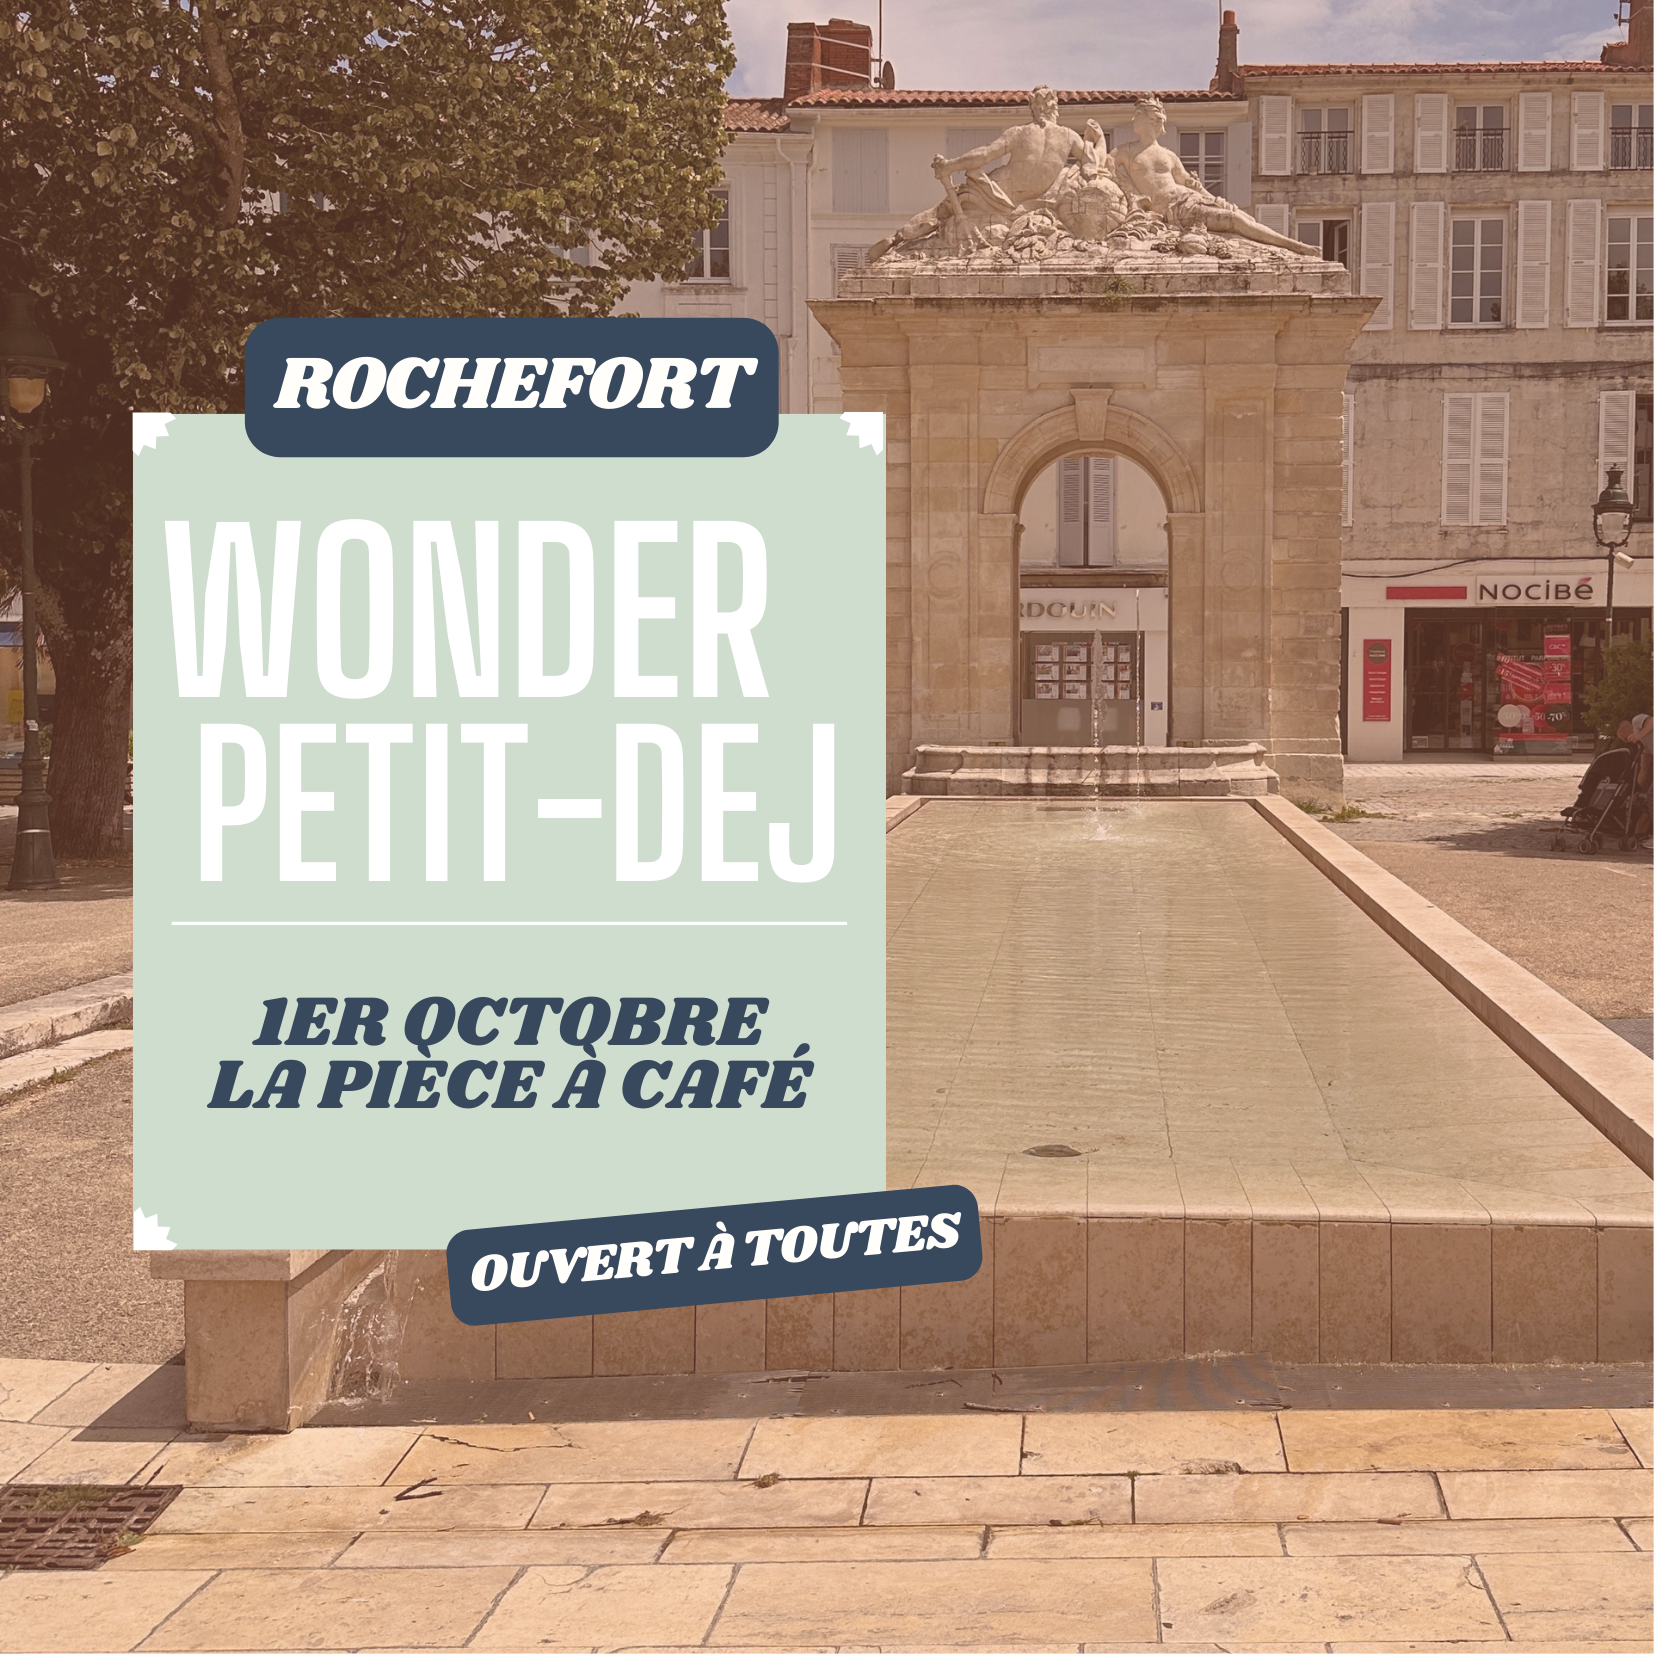 Wonder Petit dej à Rochefort - La Pièce à Café